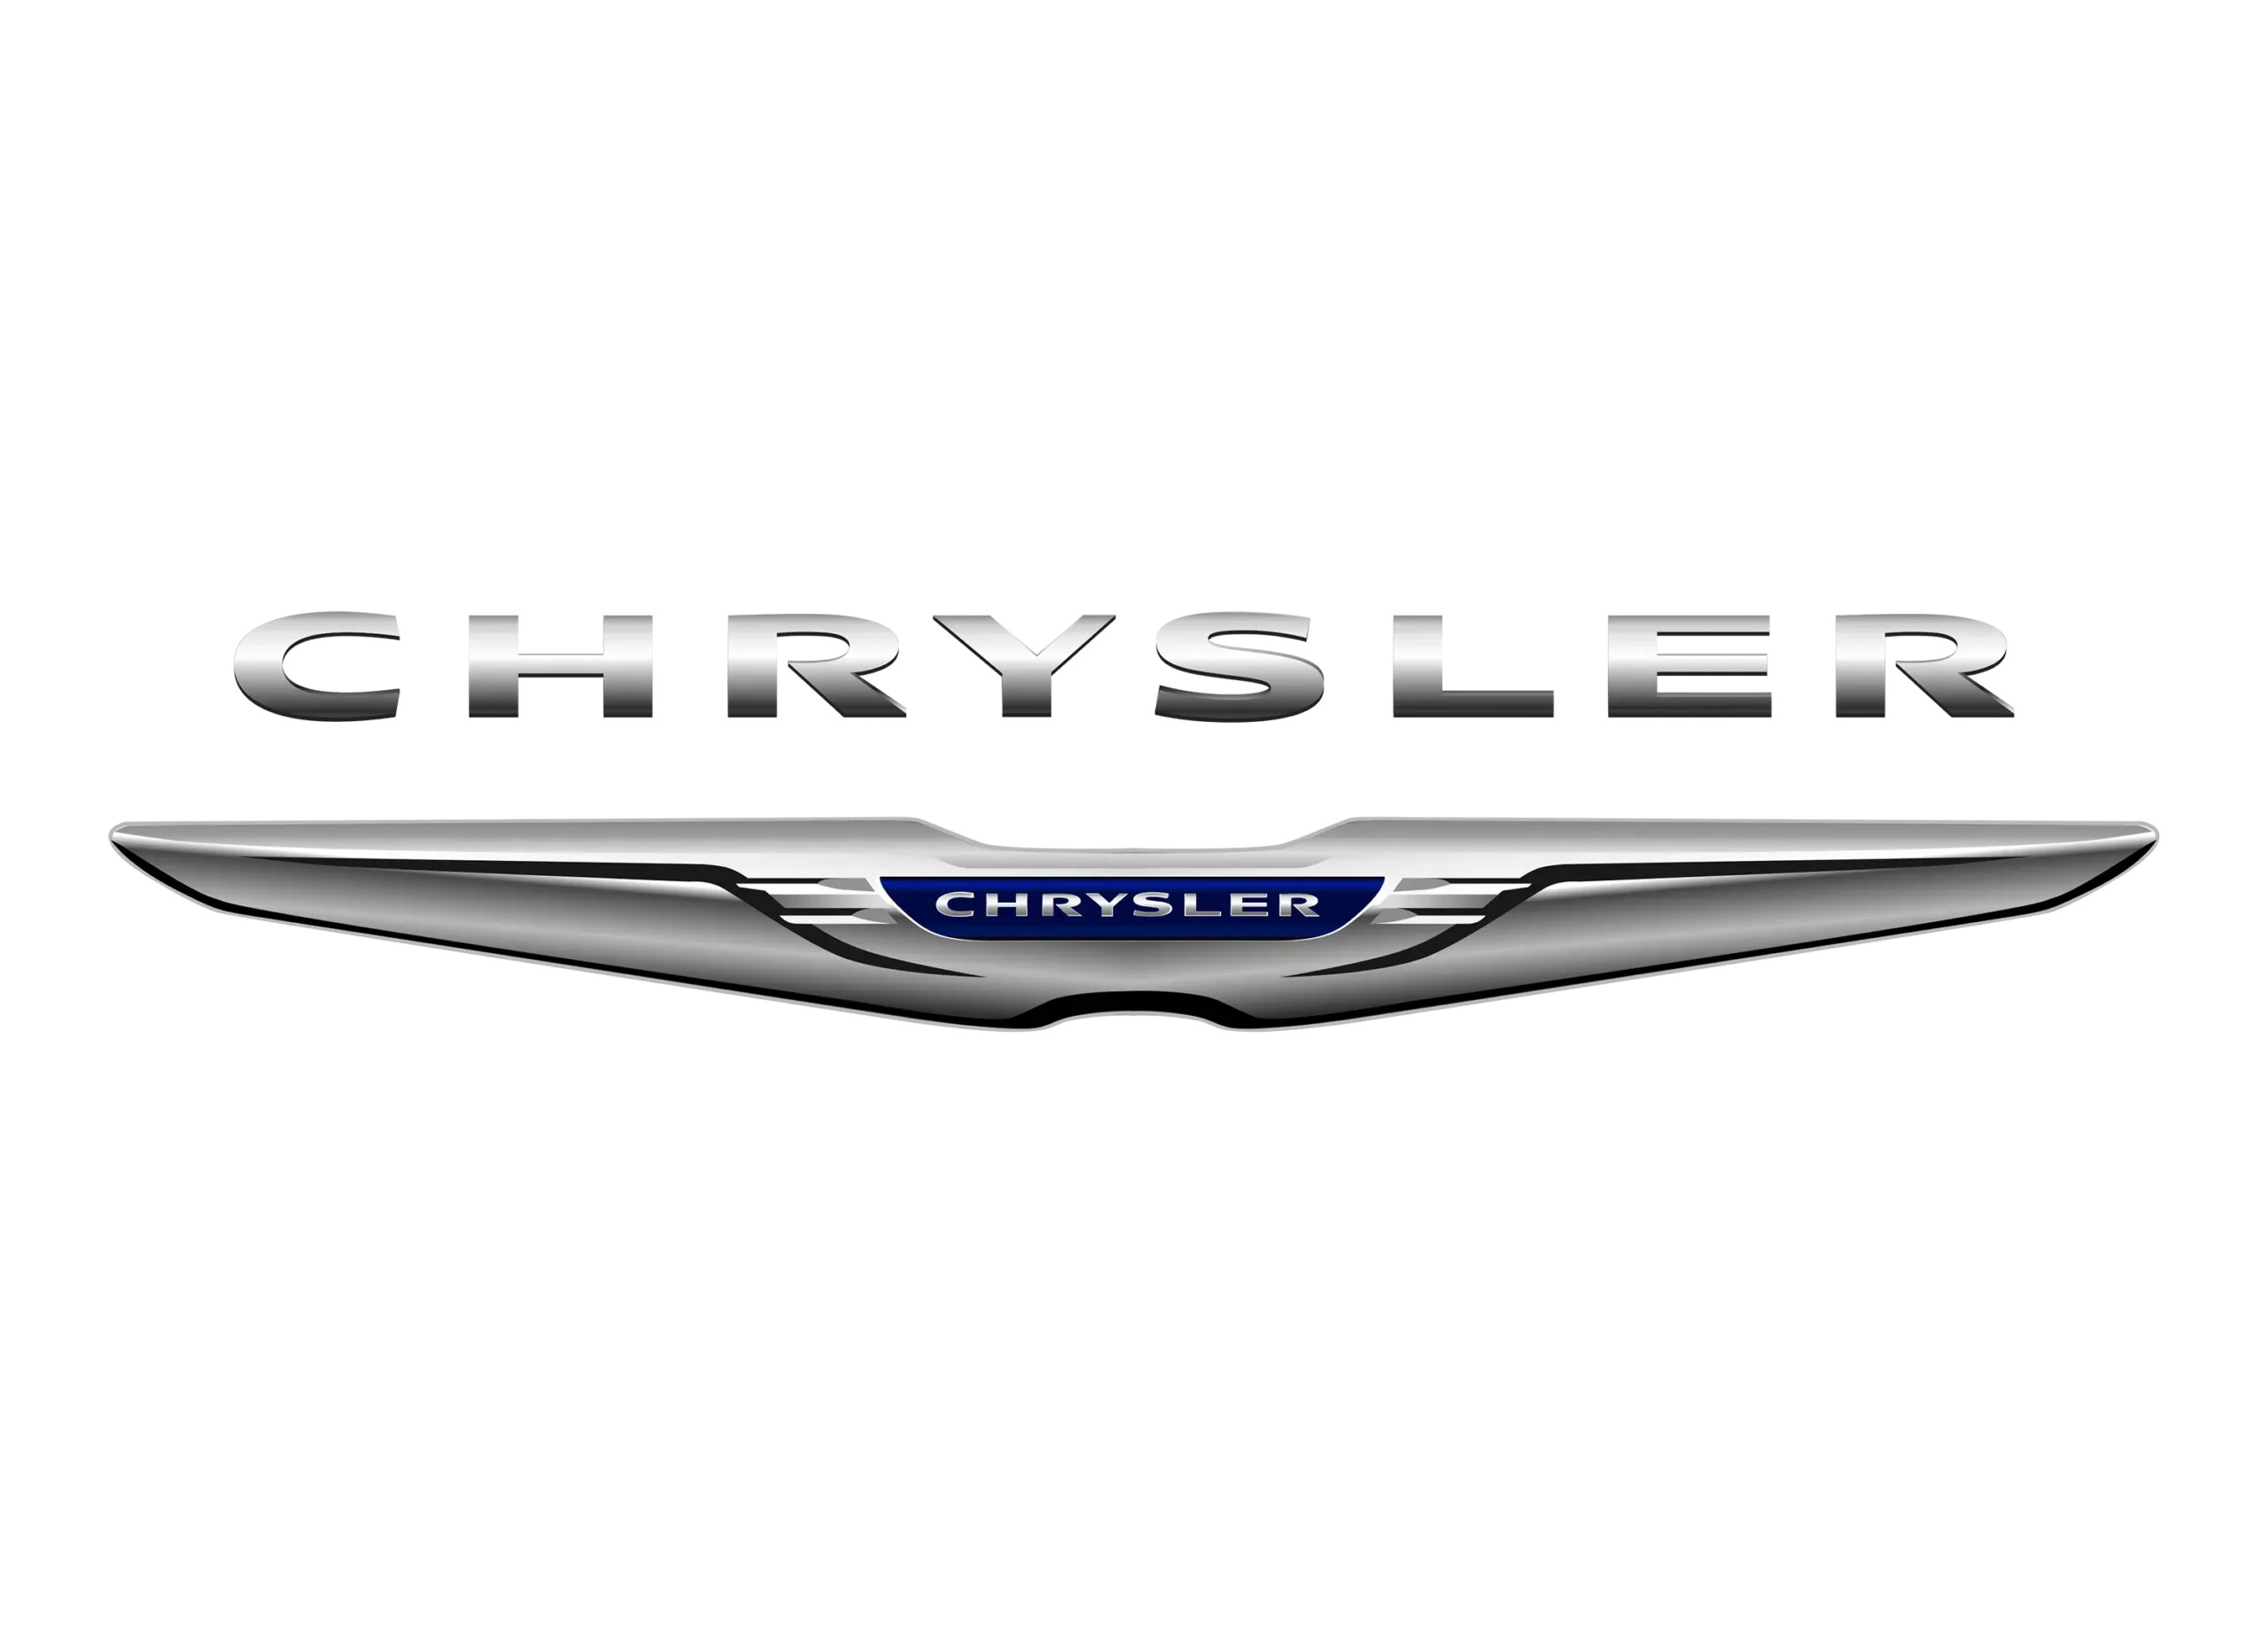 Chrysler logo 2010-present